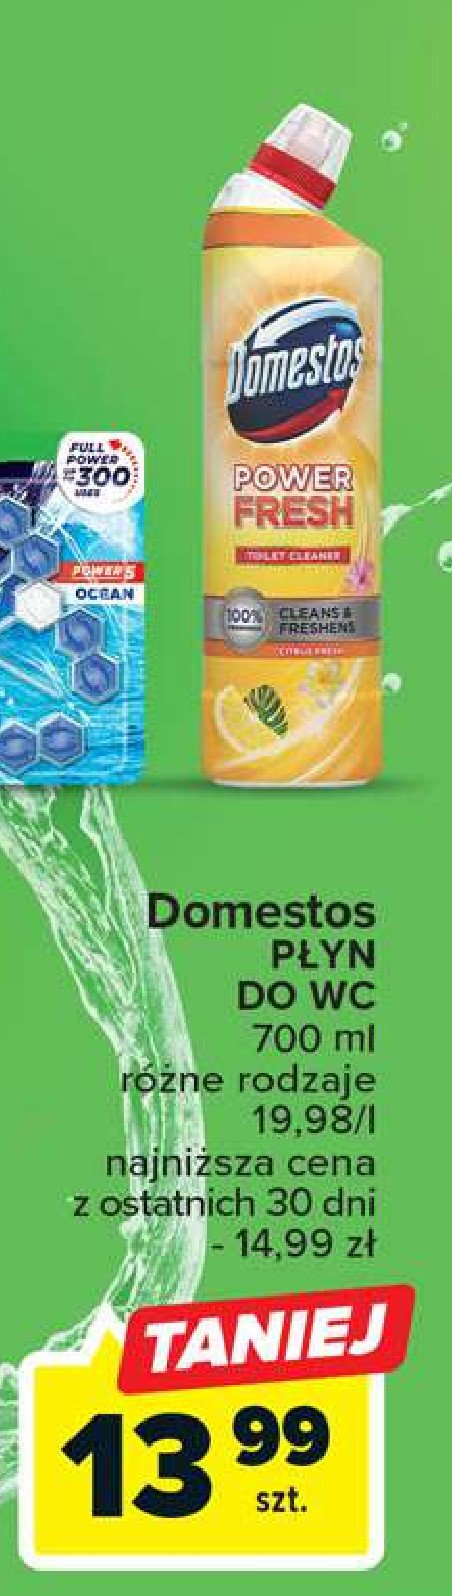 Żel do wc citrus fresh Domestos power fresh (wcześniej total hygiene) promocja